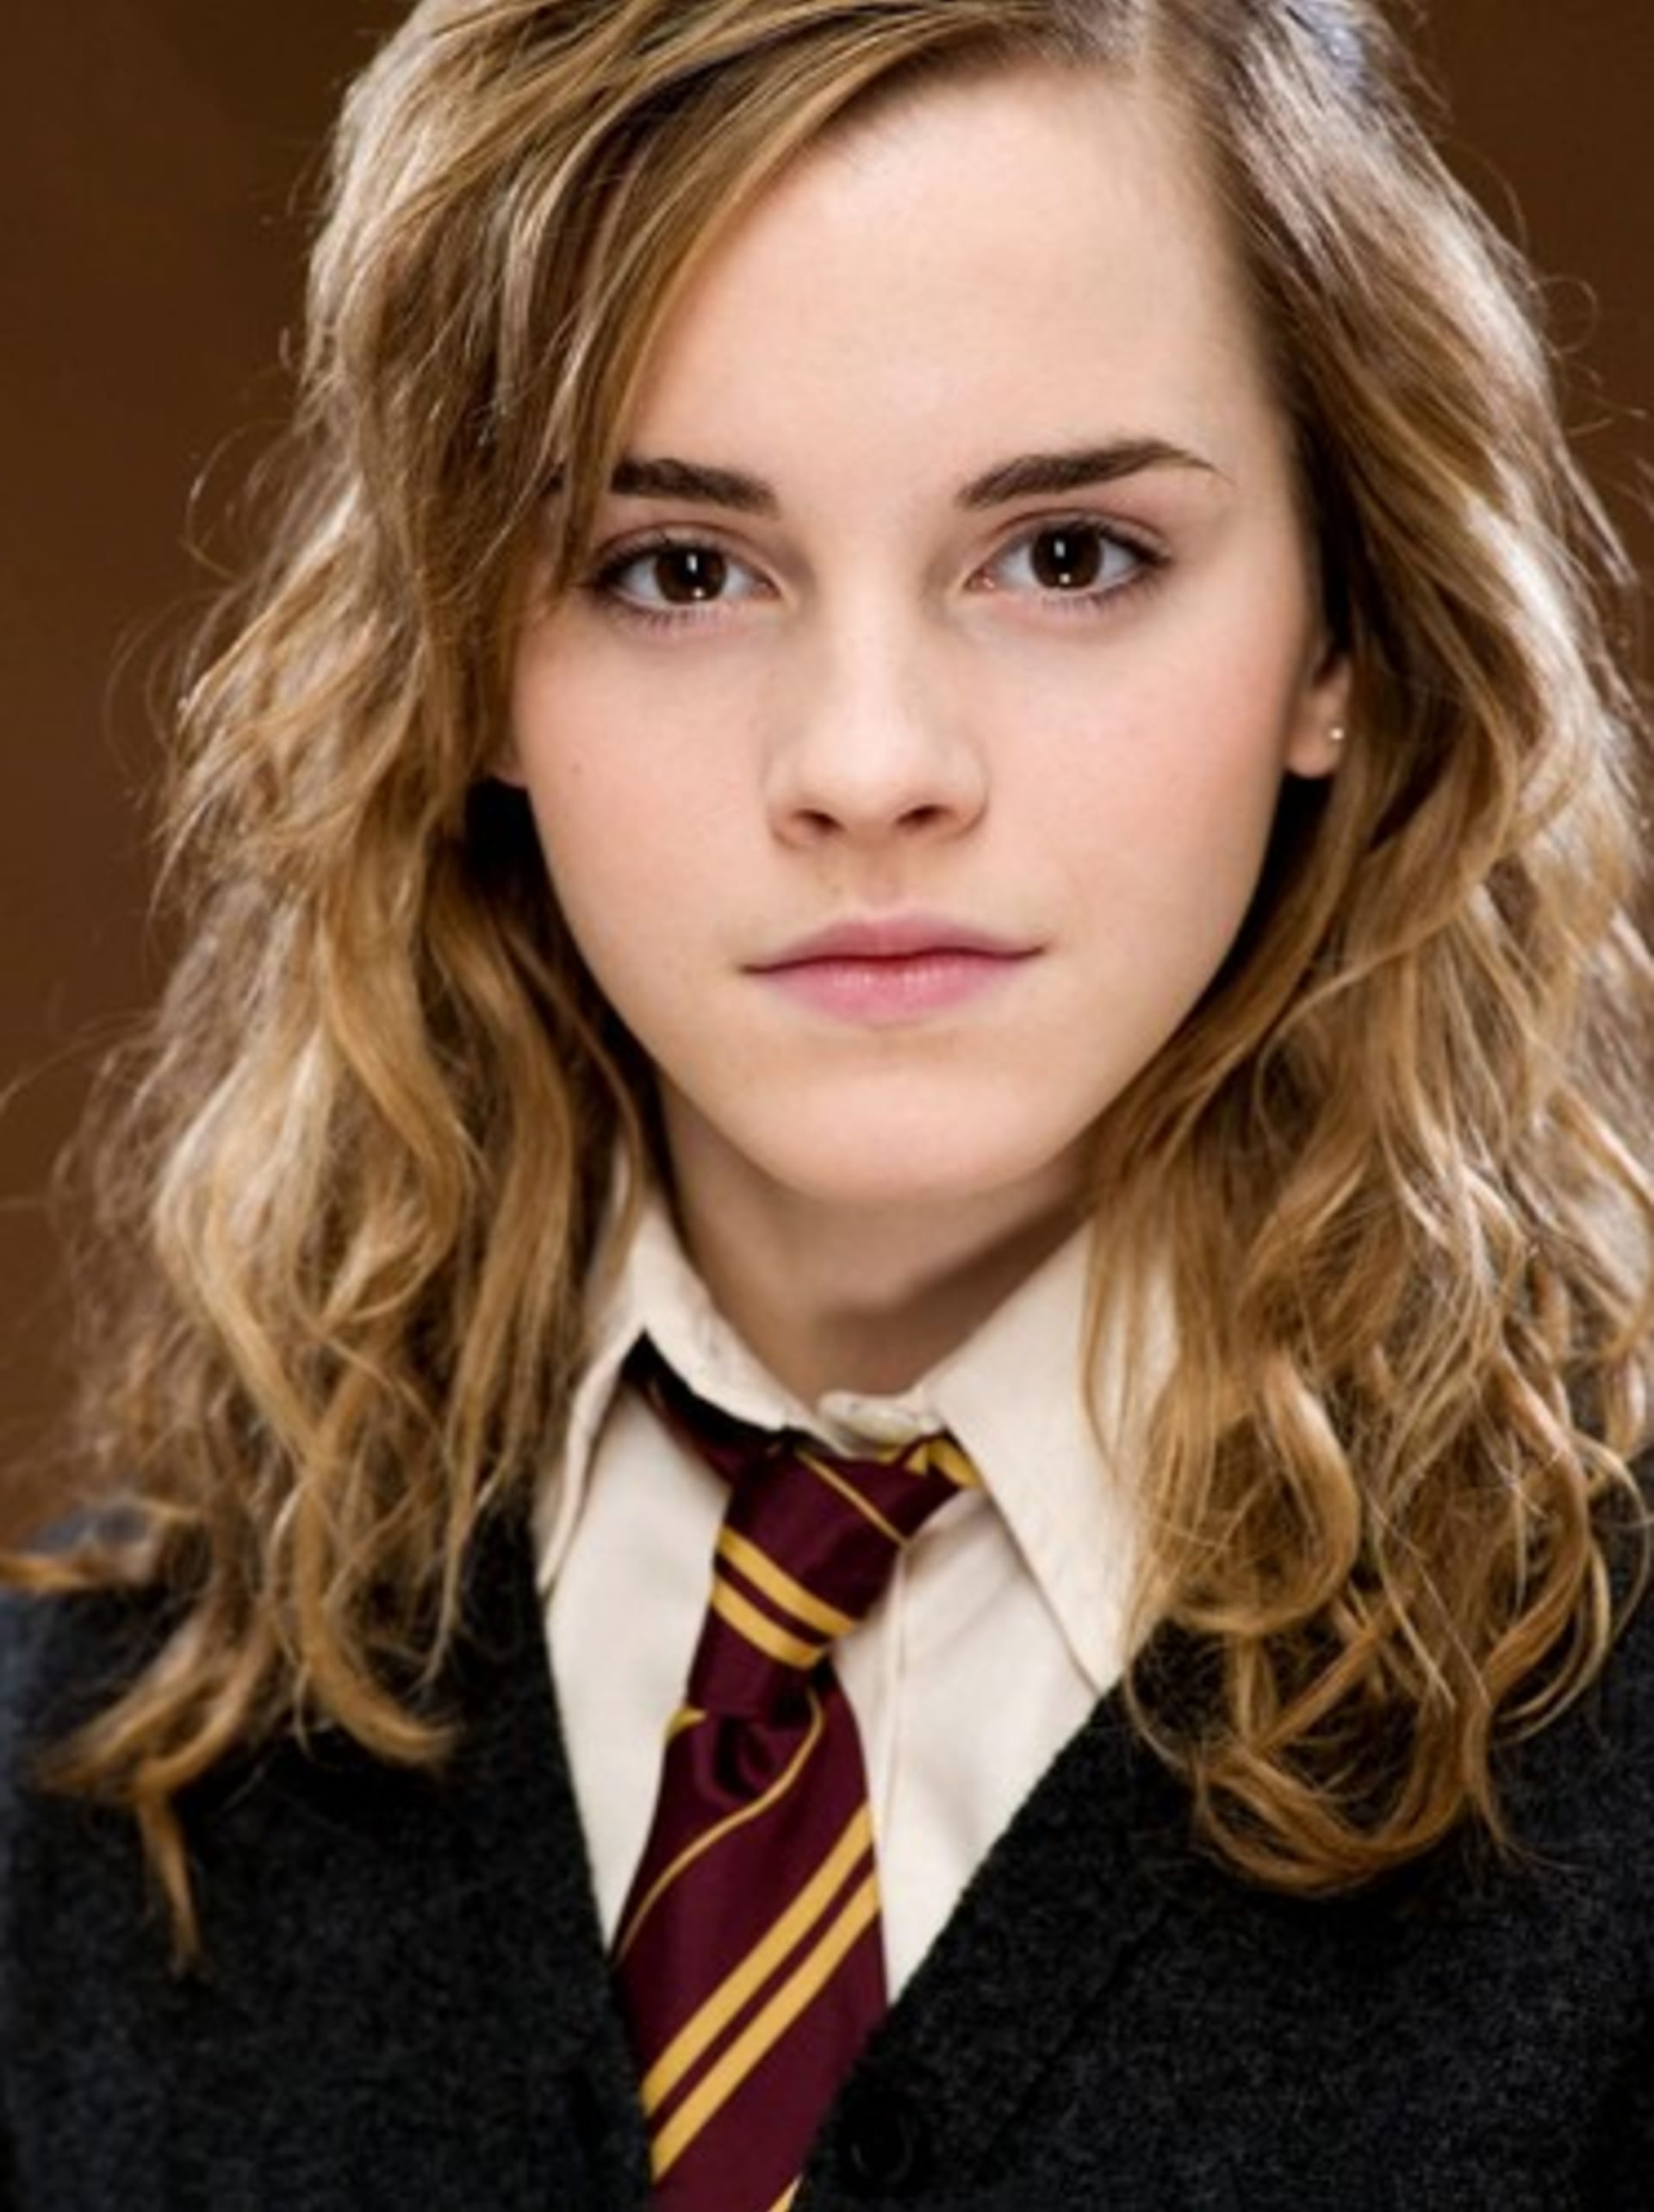 Proslavila se svou rolí Hermiony ve filmech Harry Potter.